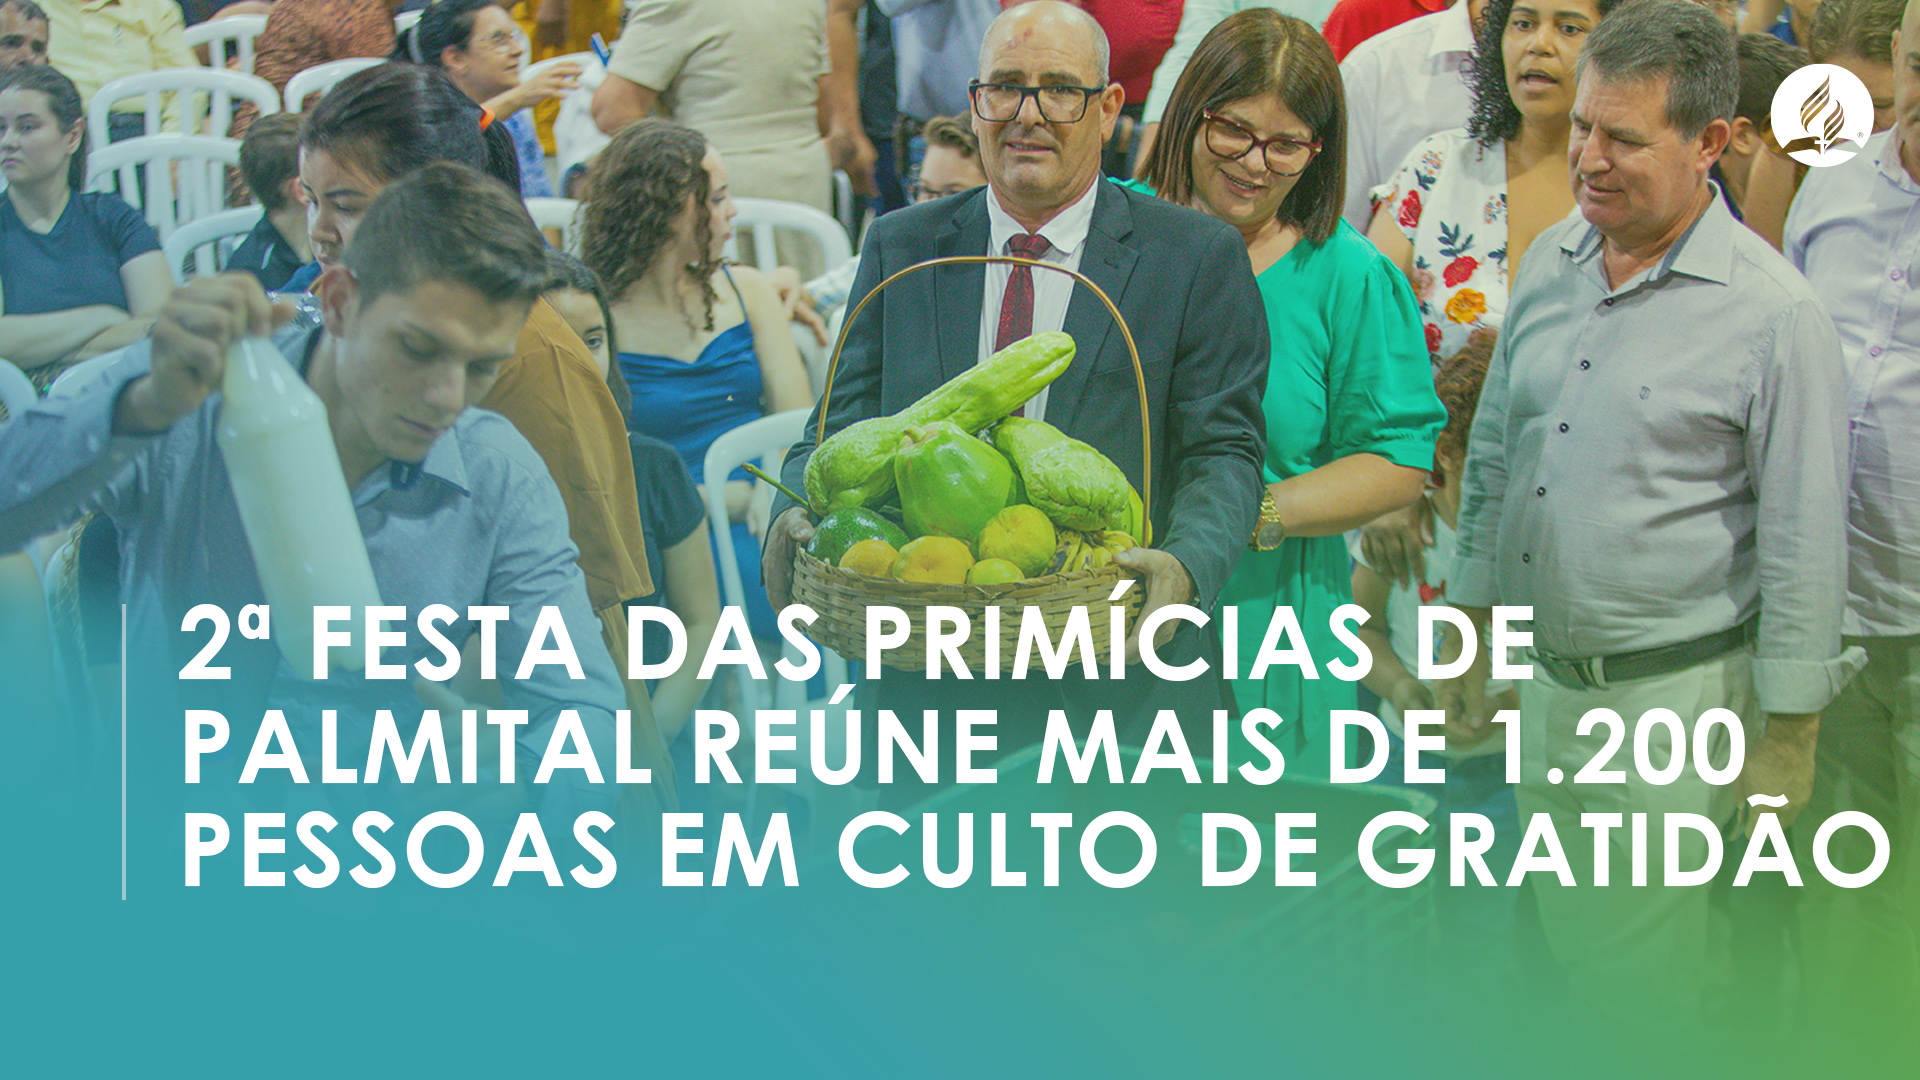 Festa das Primícias reúne mais de 1.200 pessoas em culto de gratidão no interior do Paraná